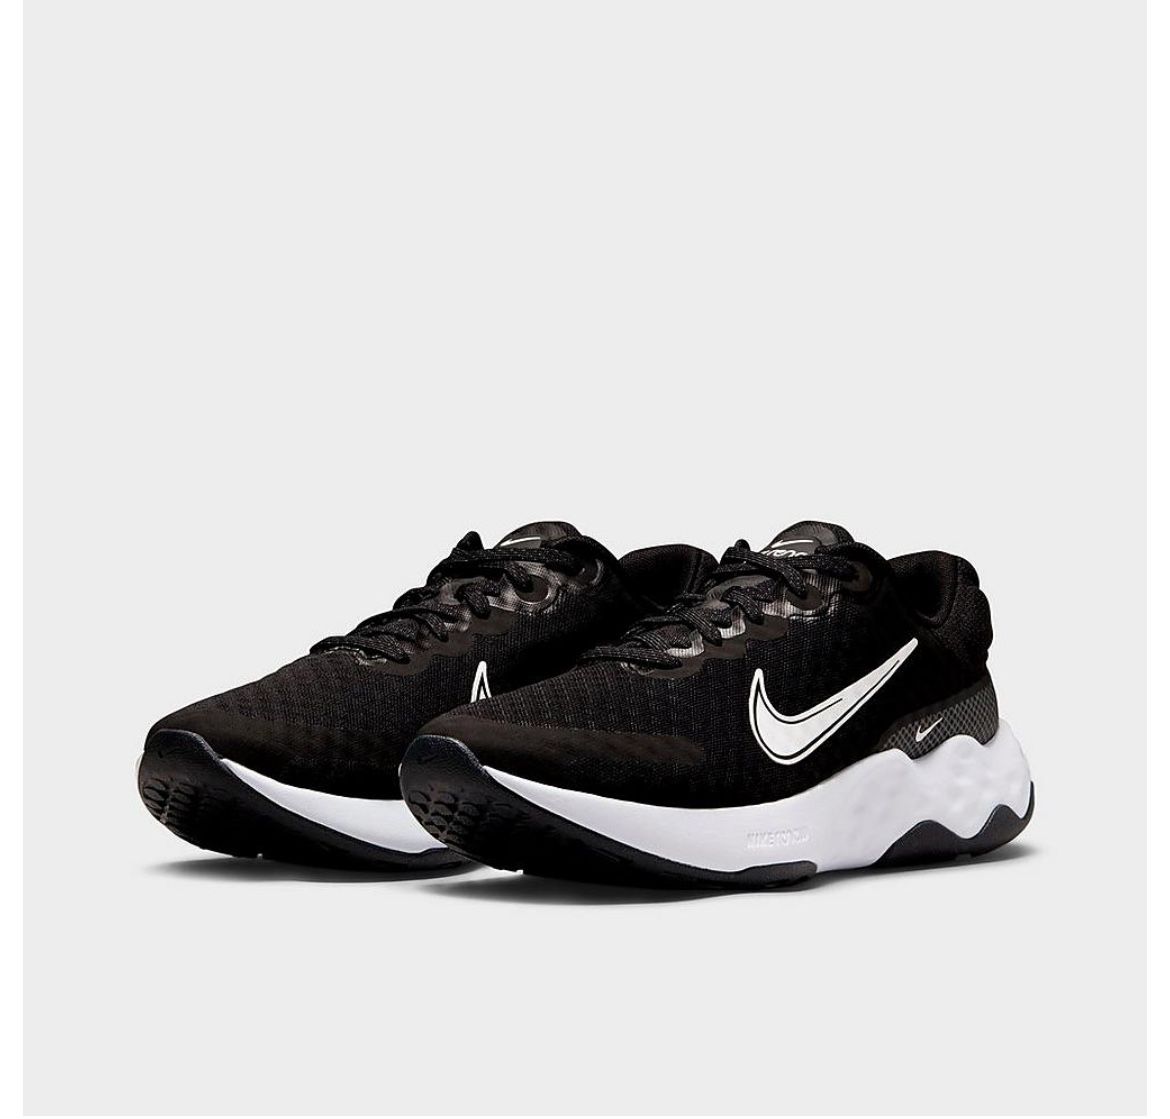 Nike Women’s Running Shoes Renew Ride 3